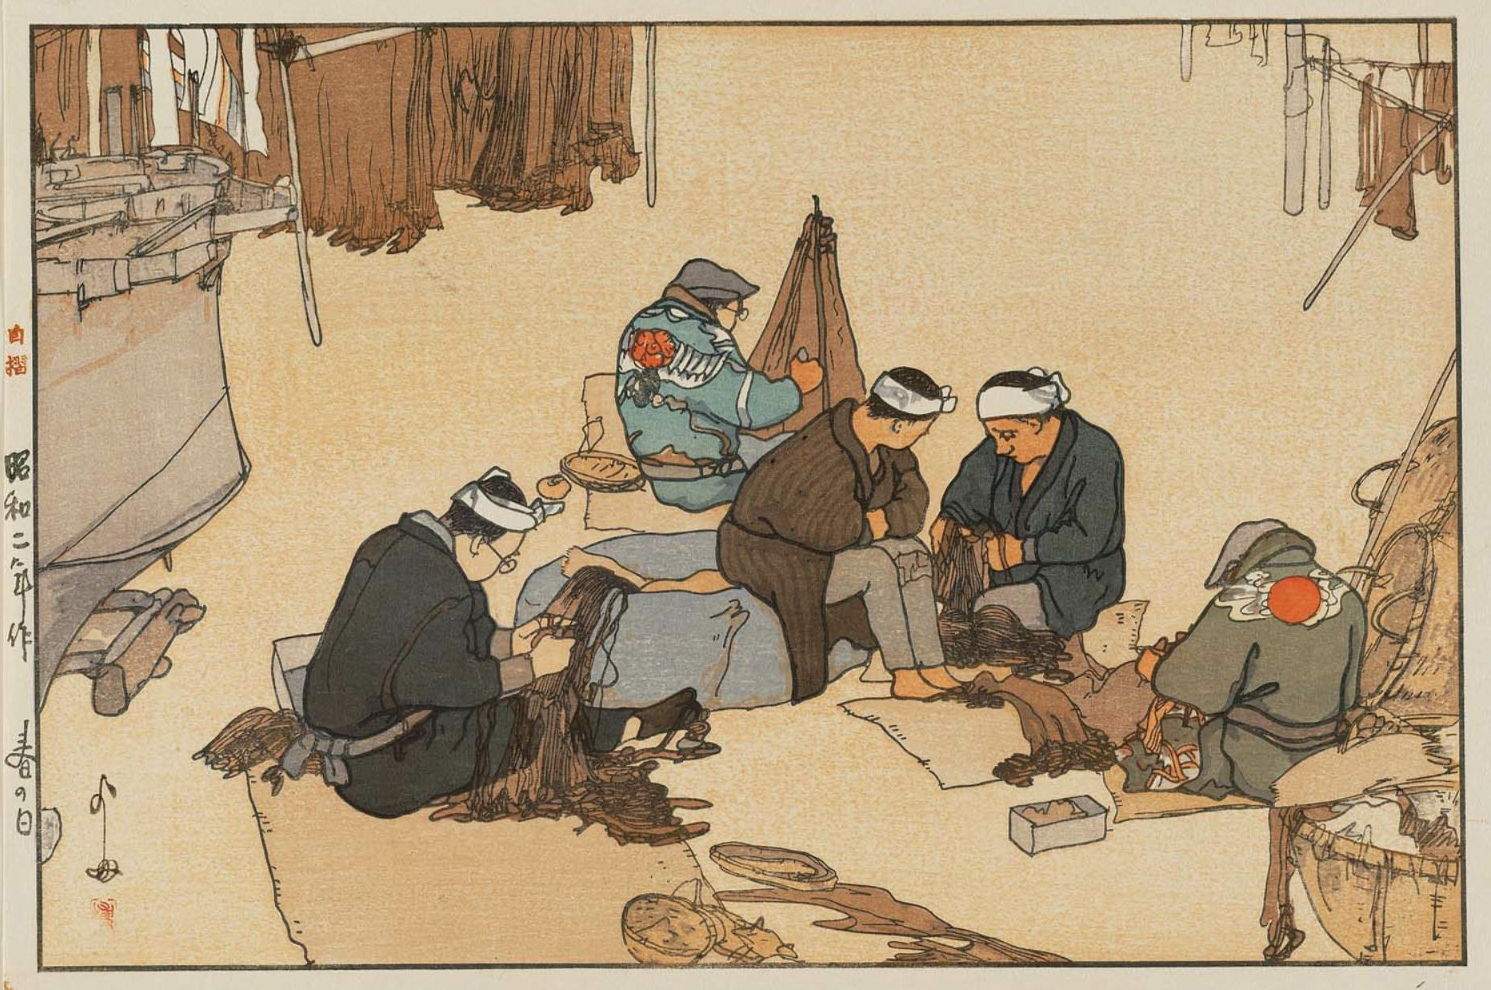 Hiroshi Yoshida “Spring Day” 1927 woodblock print